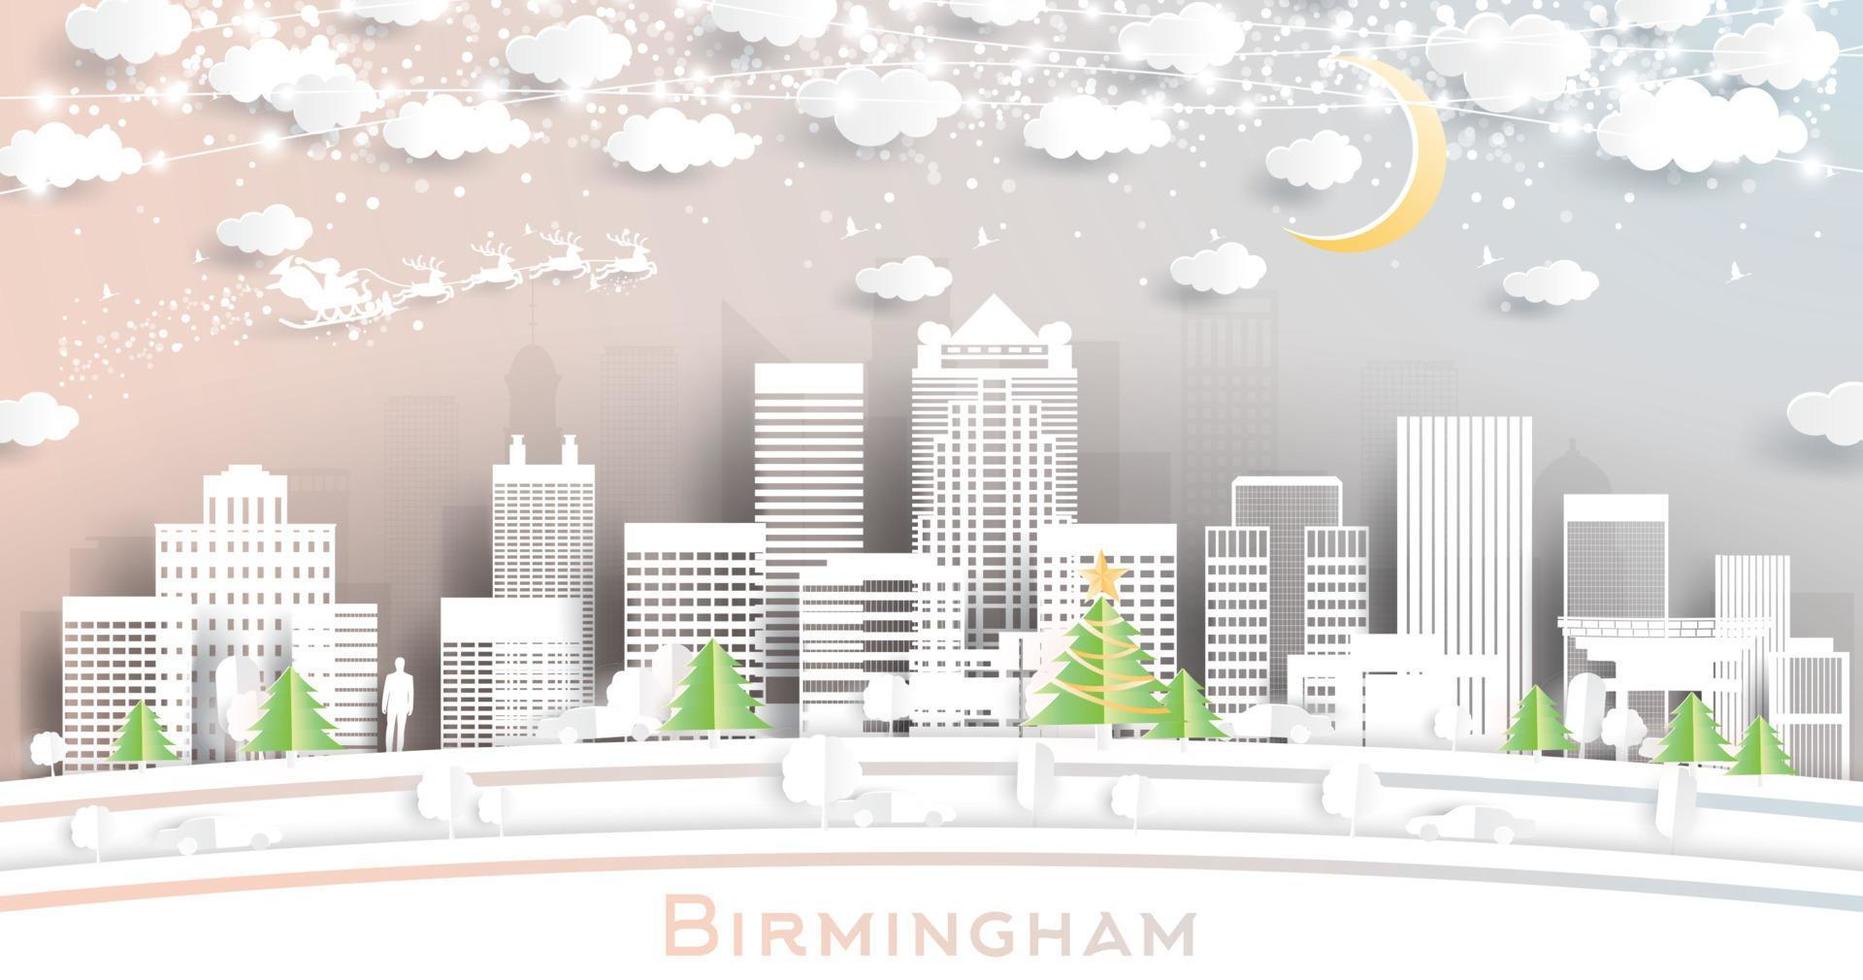 birmingham alabama usa city skyline en papier découpé avec guirlande de flocons de neige, de lune et de néon. vecteur